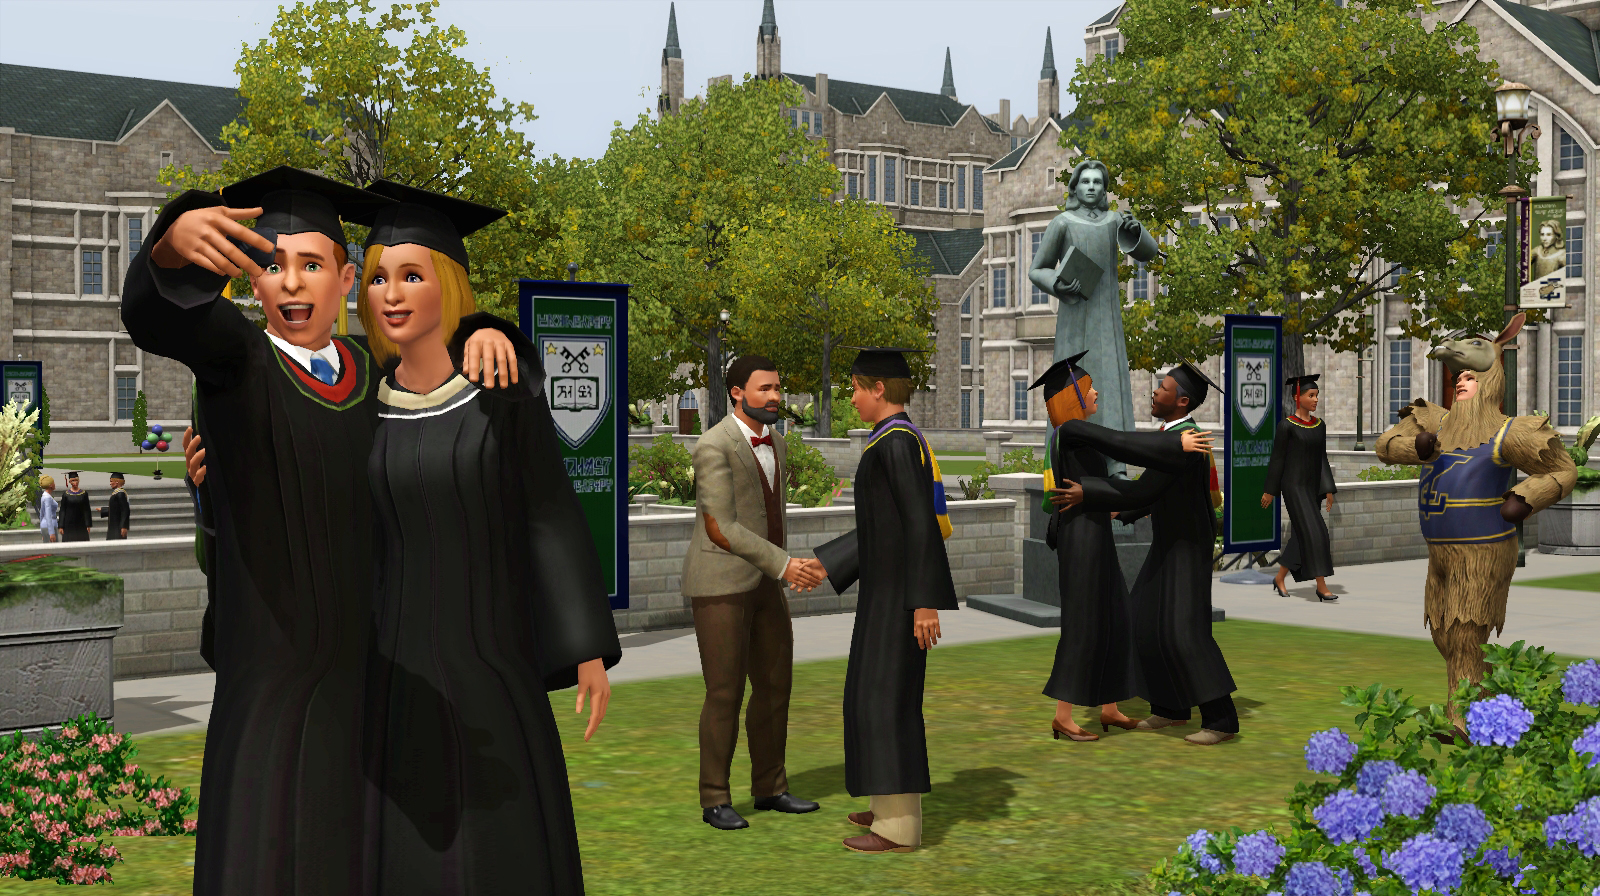 Como entrar na universidade em The Sims 4